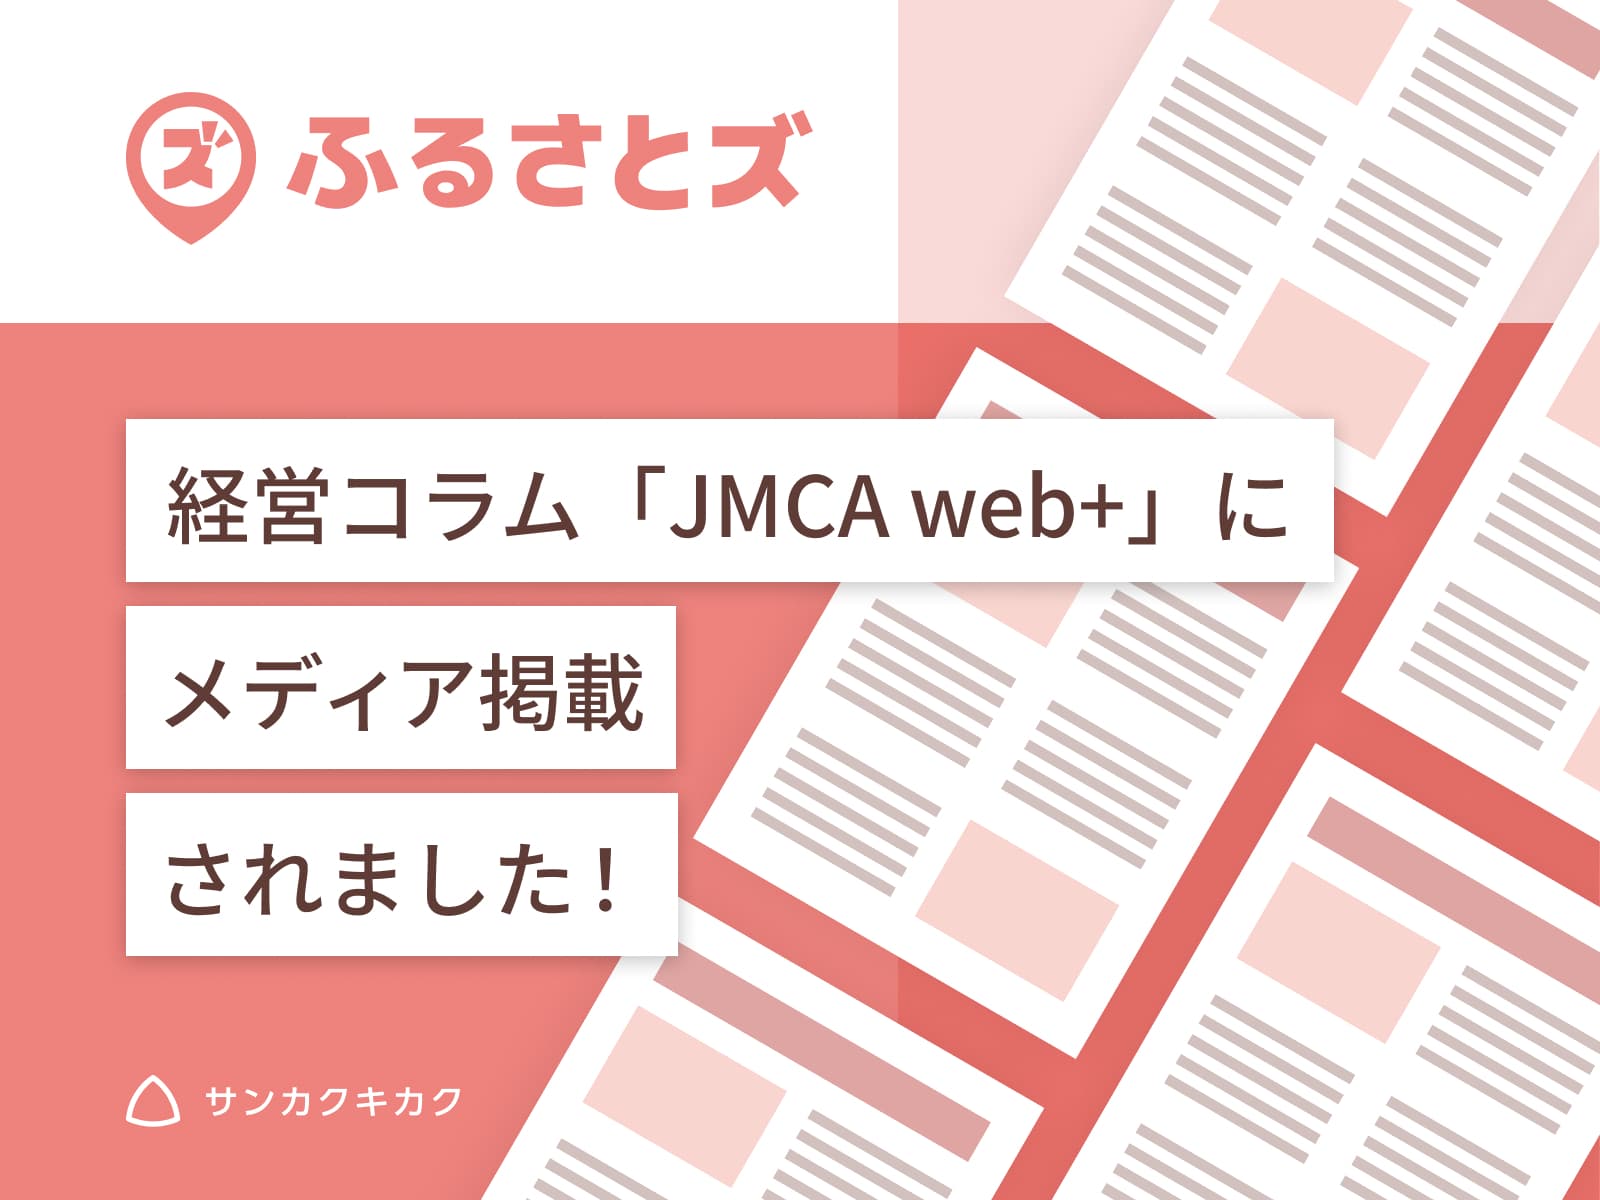 ふるさとズ｜京都府京丹波町での全国初の農園での導入が 経営コラム「JMCA web+」で掲載されました。